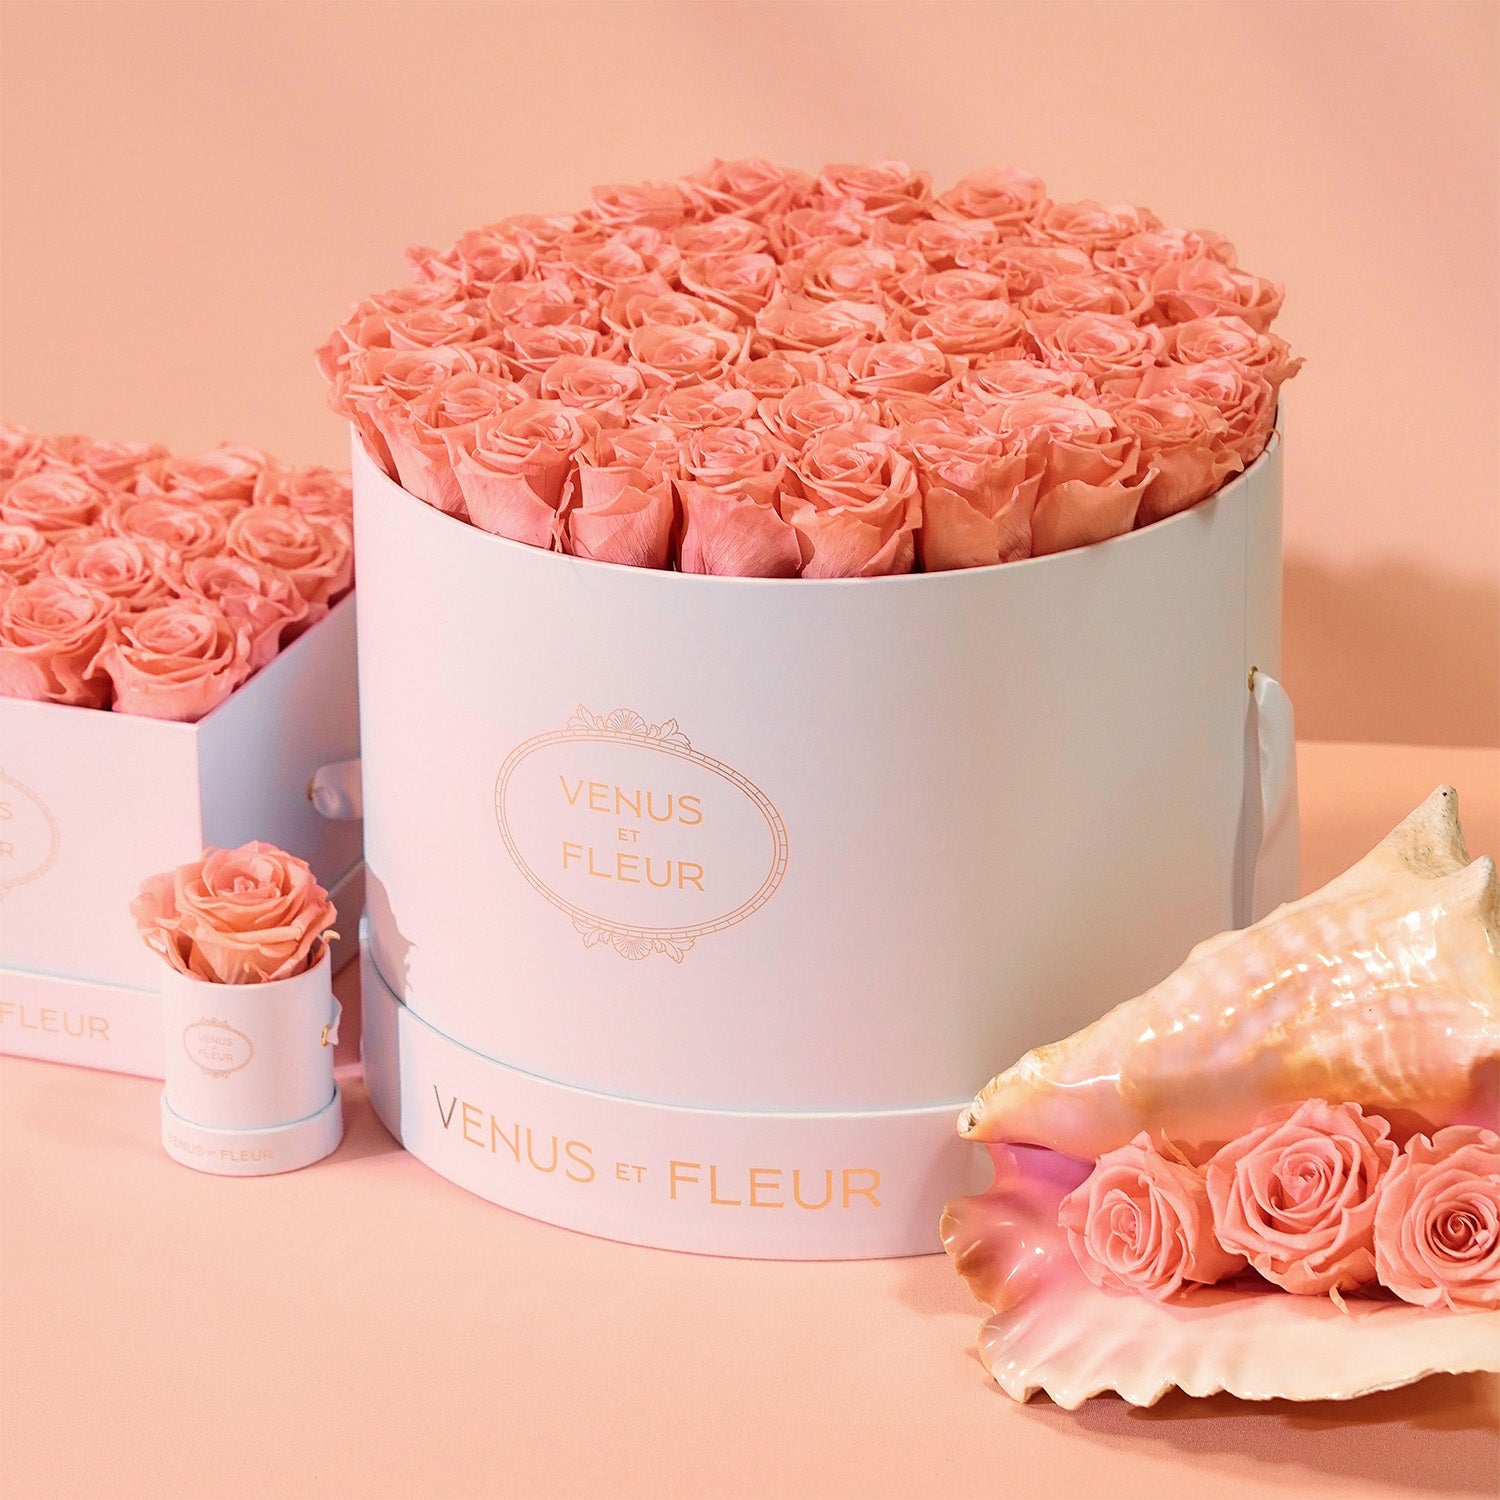 Dusty Rose: The New Pink Rose Color of Spring – Venus et Fleur